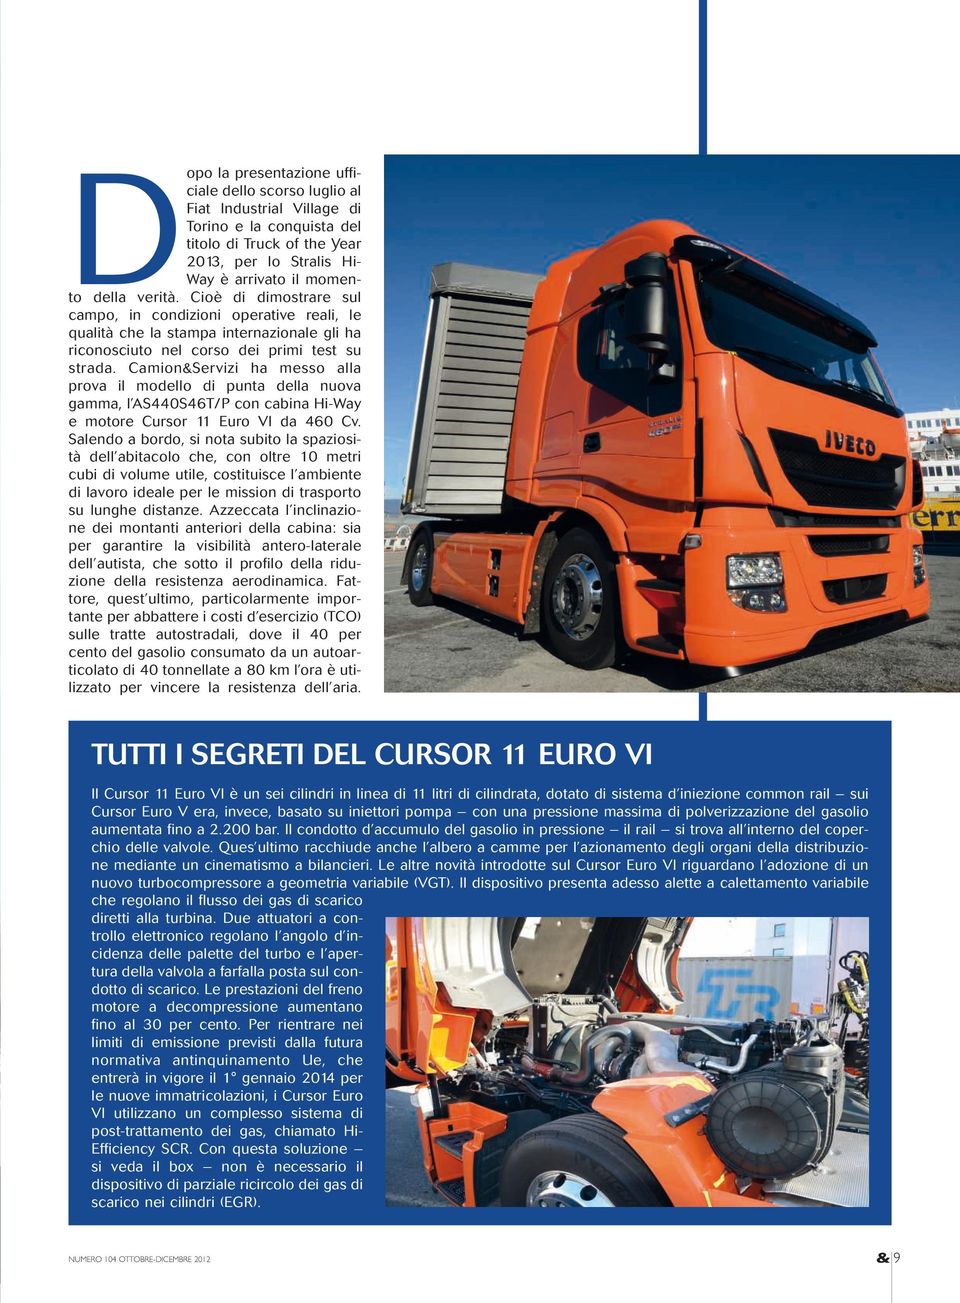 Camion&Servizi ha messo alla prova il modello di punta della nuova gamma, l AS440S46T/P con cabina Hi-Way e motore Cursor 11 Euro VI da 460 Cv.